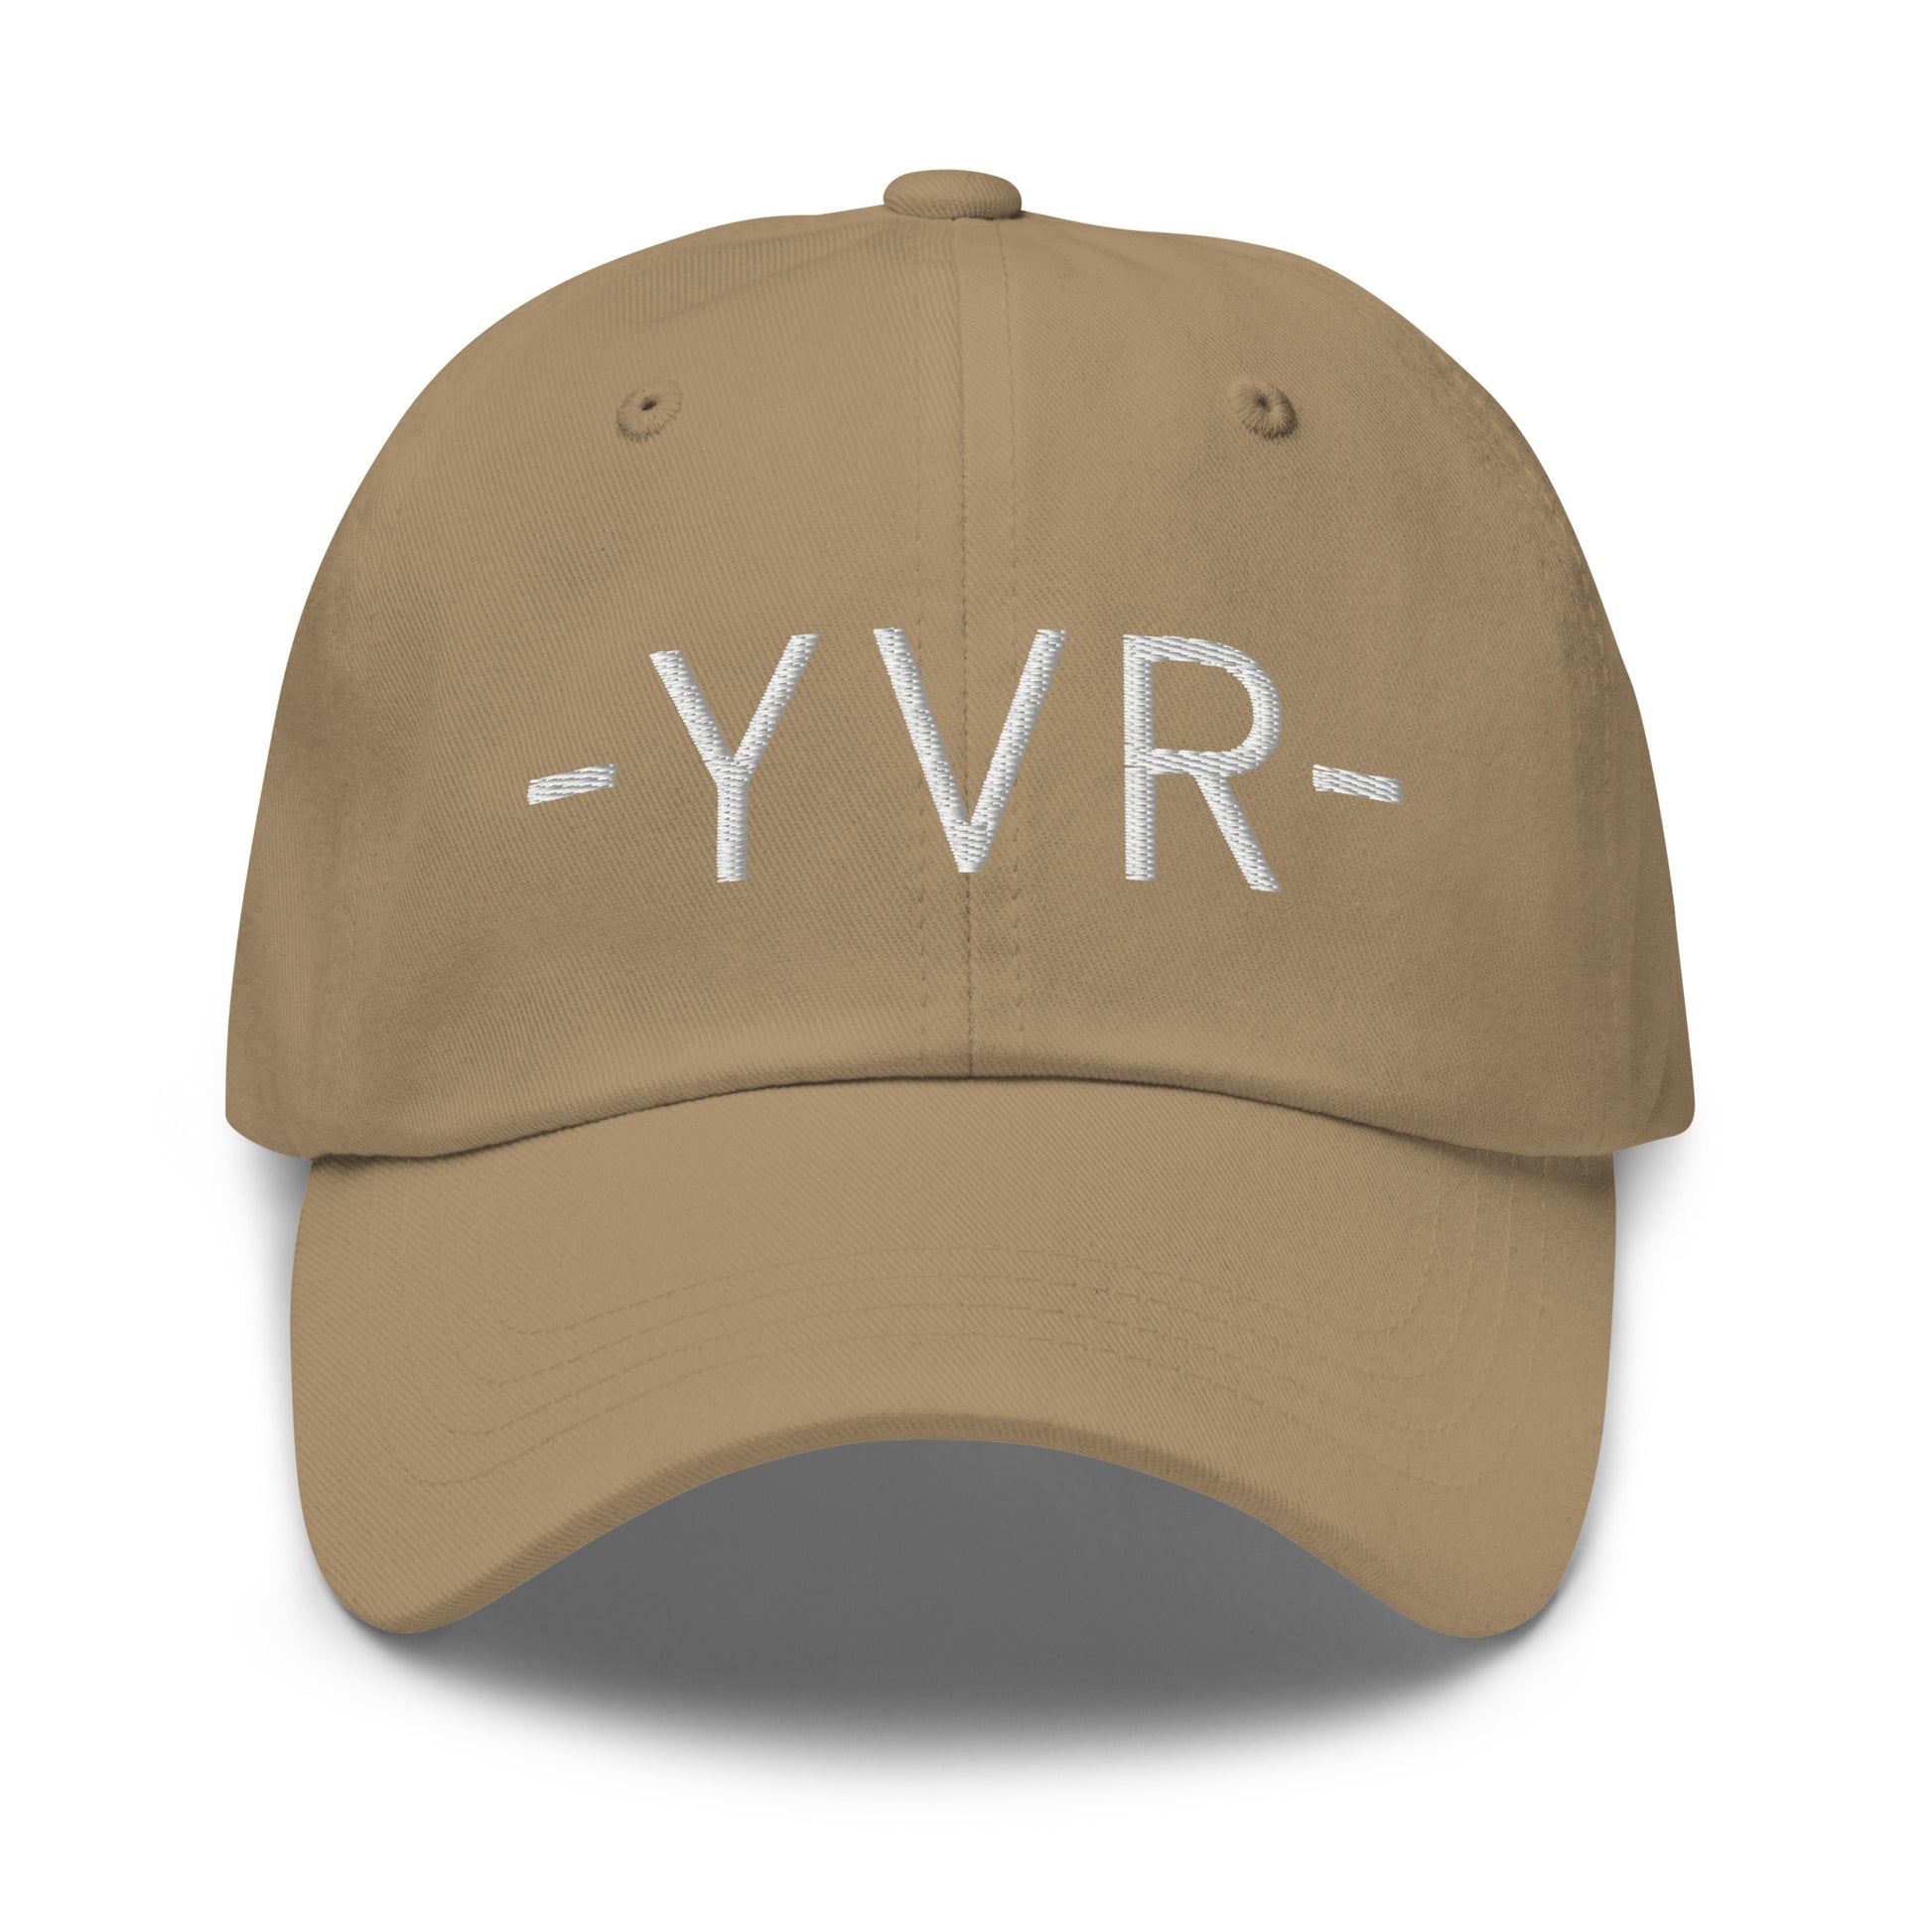 Souvenir Baseball Cap - White • YVR Vancouver • YHM Designs - Image 21